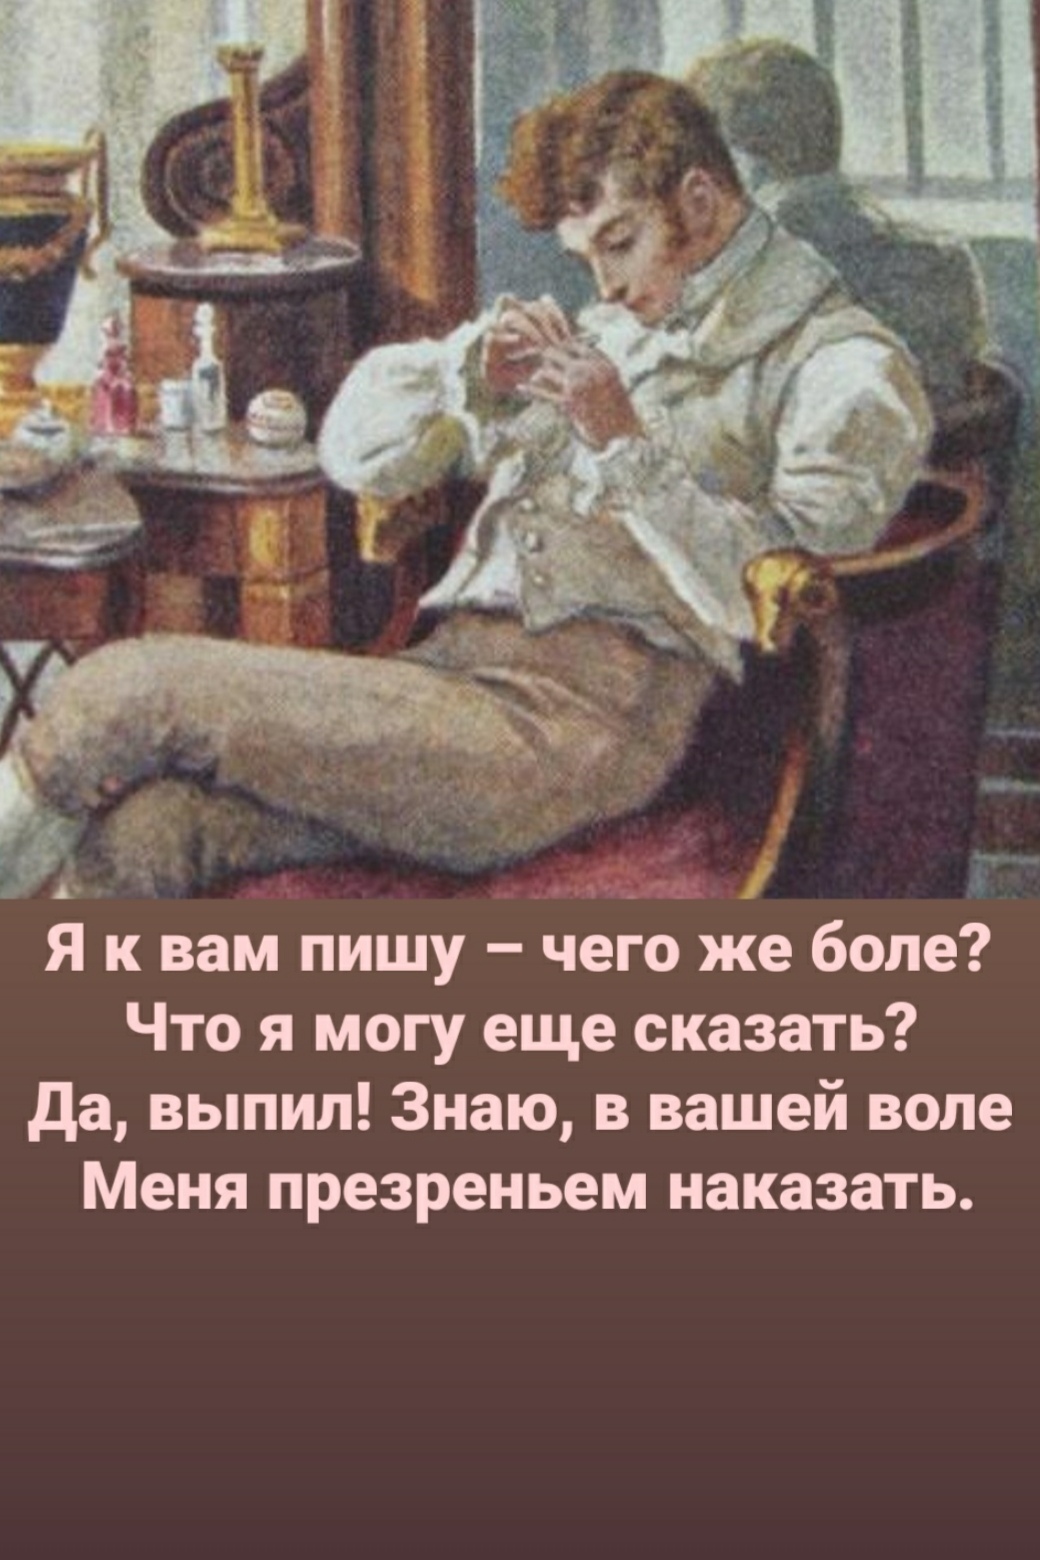 Пушкин скука